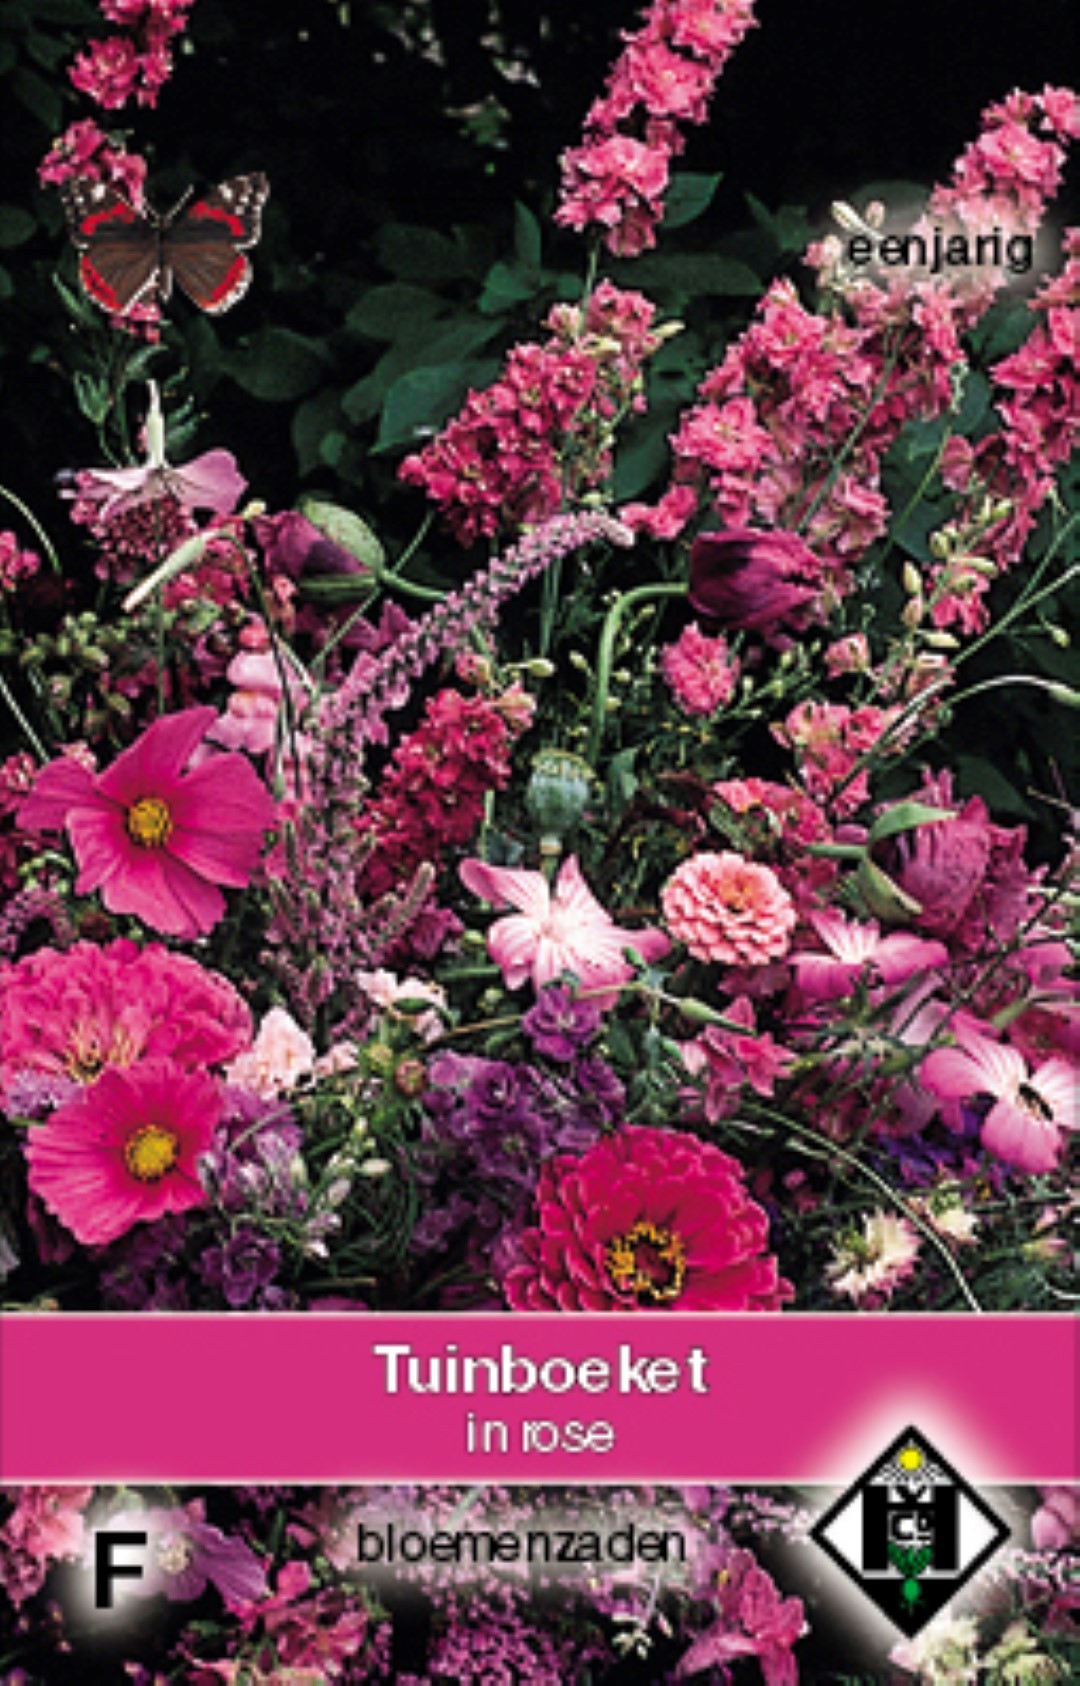 Tuinboeket, Plukmengsel in rose